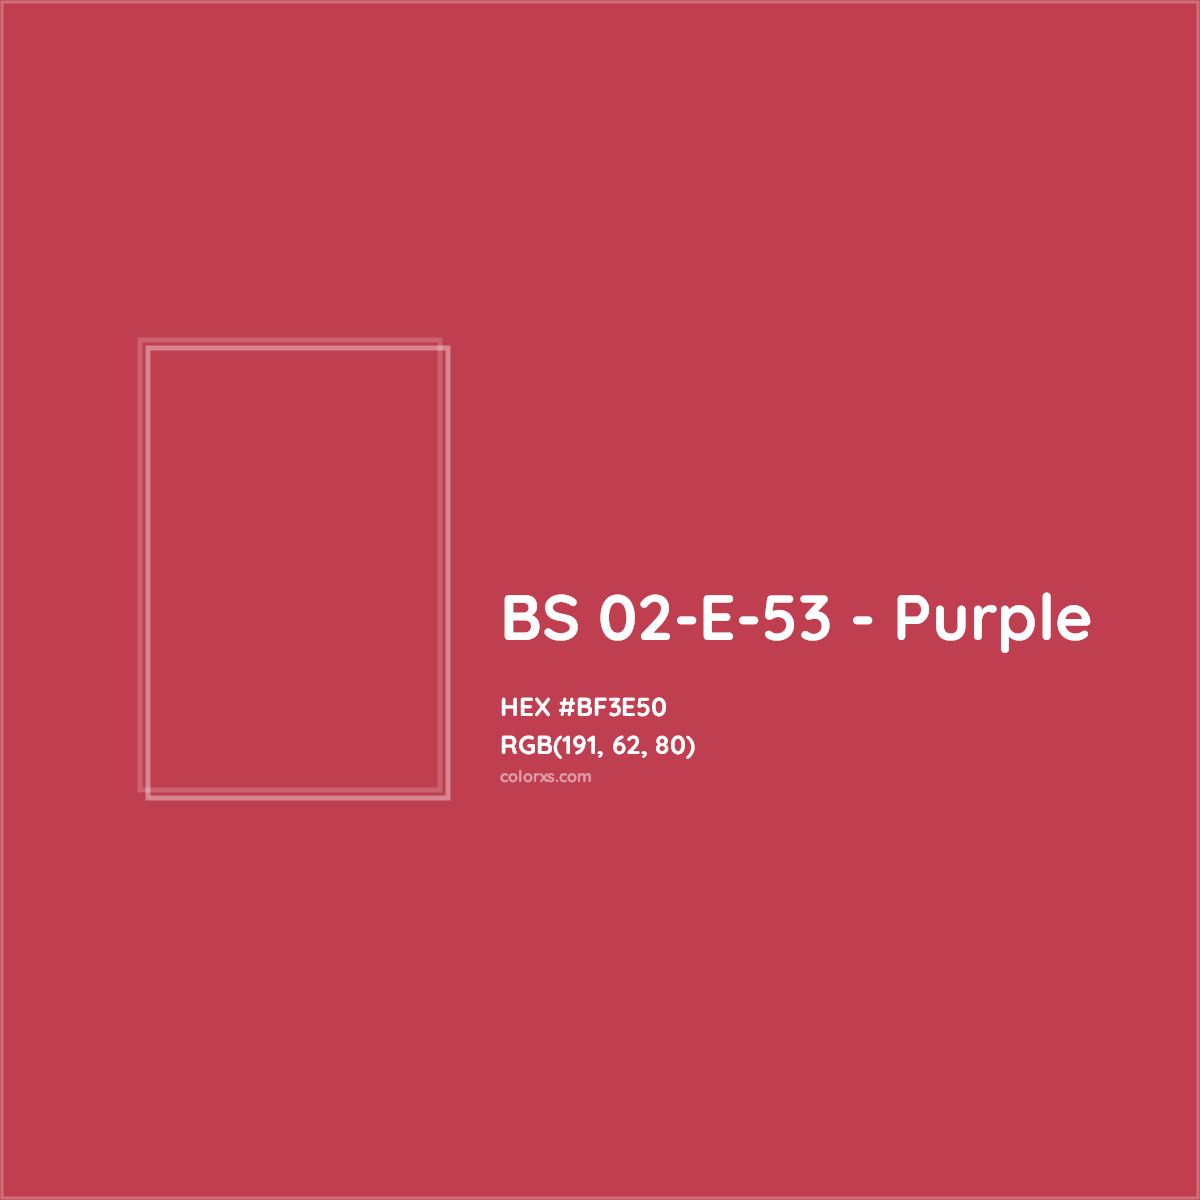 HEX #BF3E50 BS 02-E-53 - Purple CMS British Standard 4800 - Color Code